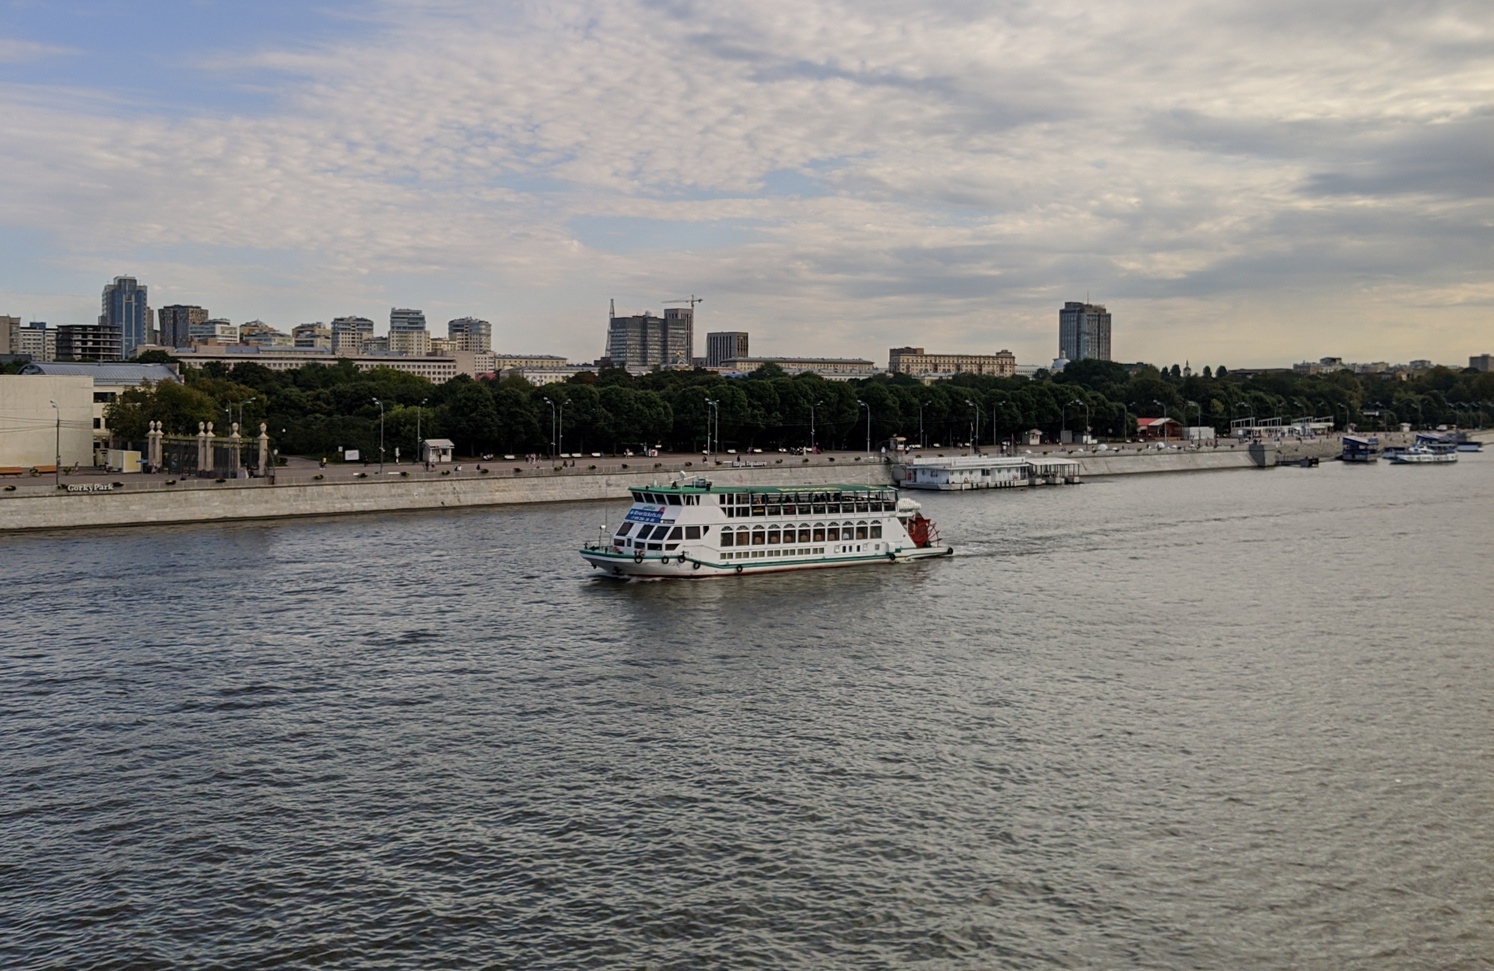 Бесплатный речной прогулочный маршрут запустили в Москве